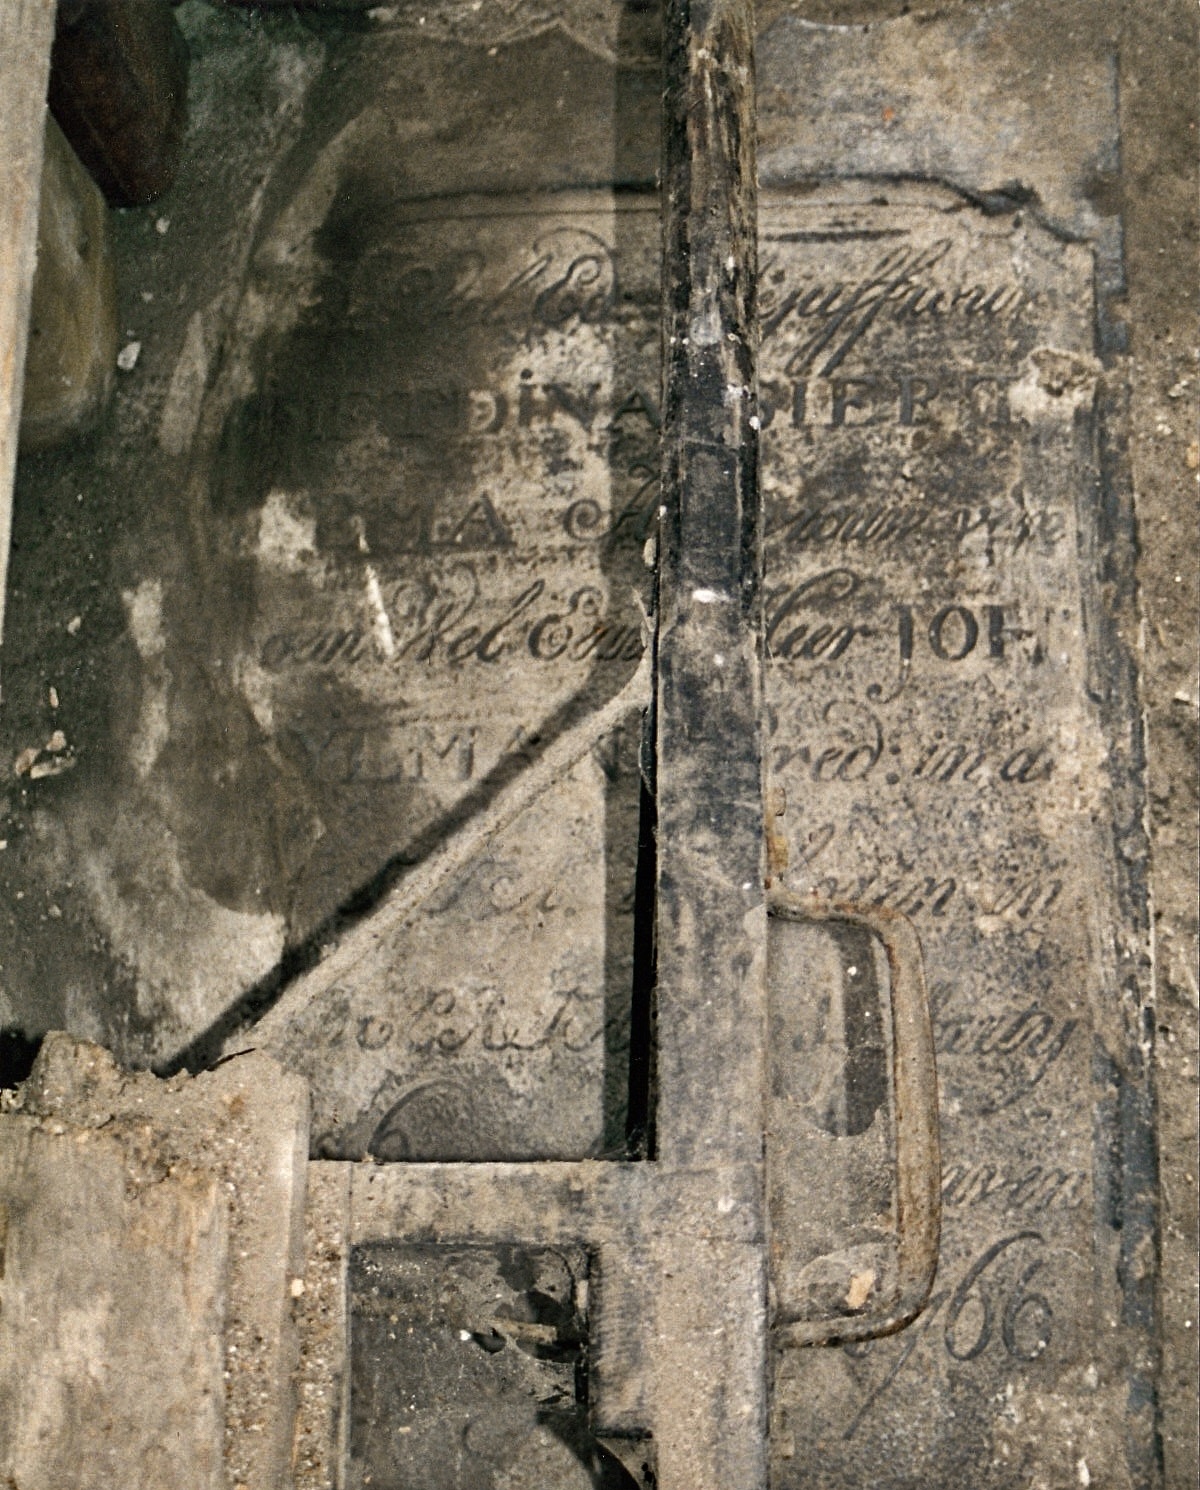 In 1997 worden de tegels en een deel van het zand tijdelijk verwijderd en worden twee graven zichtbaar. 

Het graf van Metdina valt niet goed te fotograferen omdat er een balkconstructie boven hangt. Tekst op de zerk: WELED. MEJUFFROUW METDINA SIERTSEMA, HUISVROUW VAN DE WELEERW. HEER JOH. SYLMAN, PRED. IN DE EEXTA, IS GEBOREN IN BEERTA DEN 11 MARTY 1726, ALHIER GESTORVEN DEN 18 SEPTEMBR 1766. N.B. Fundament van lijkenhuisje. Mededeling. GDW, blz. 246, nr. [1130A]. Foto: ©Geert-Jan Siertsema; fotobewerking: Jur Kuipers.